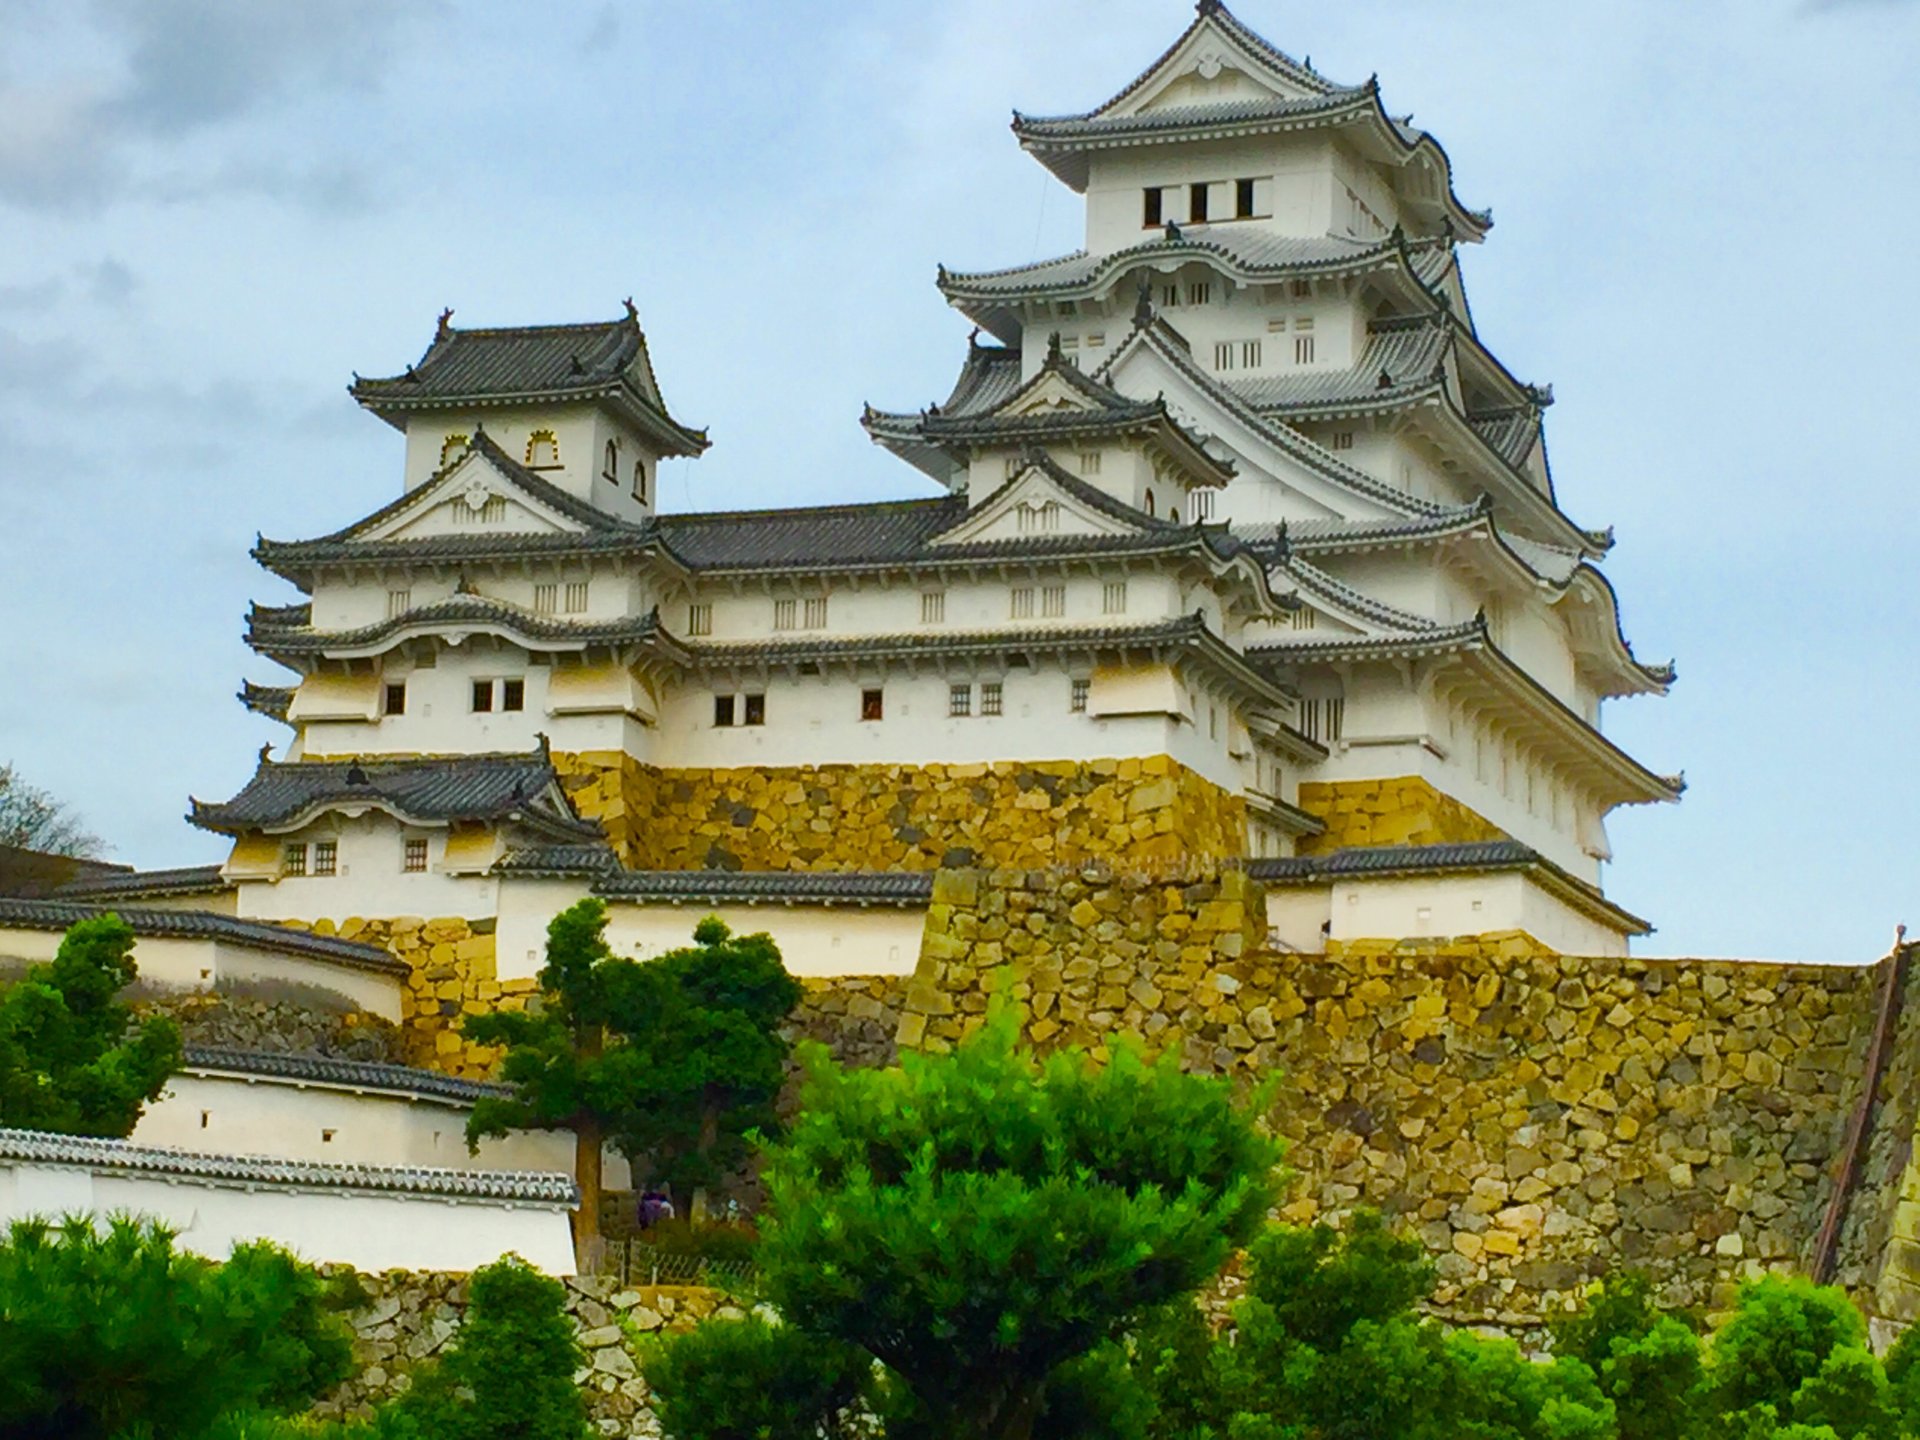 【フォトジェニックな世界遺産】日本最大の天守閣姫路城の美しい写真を撮影できるスポット